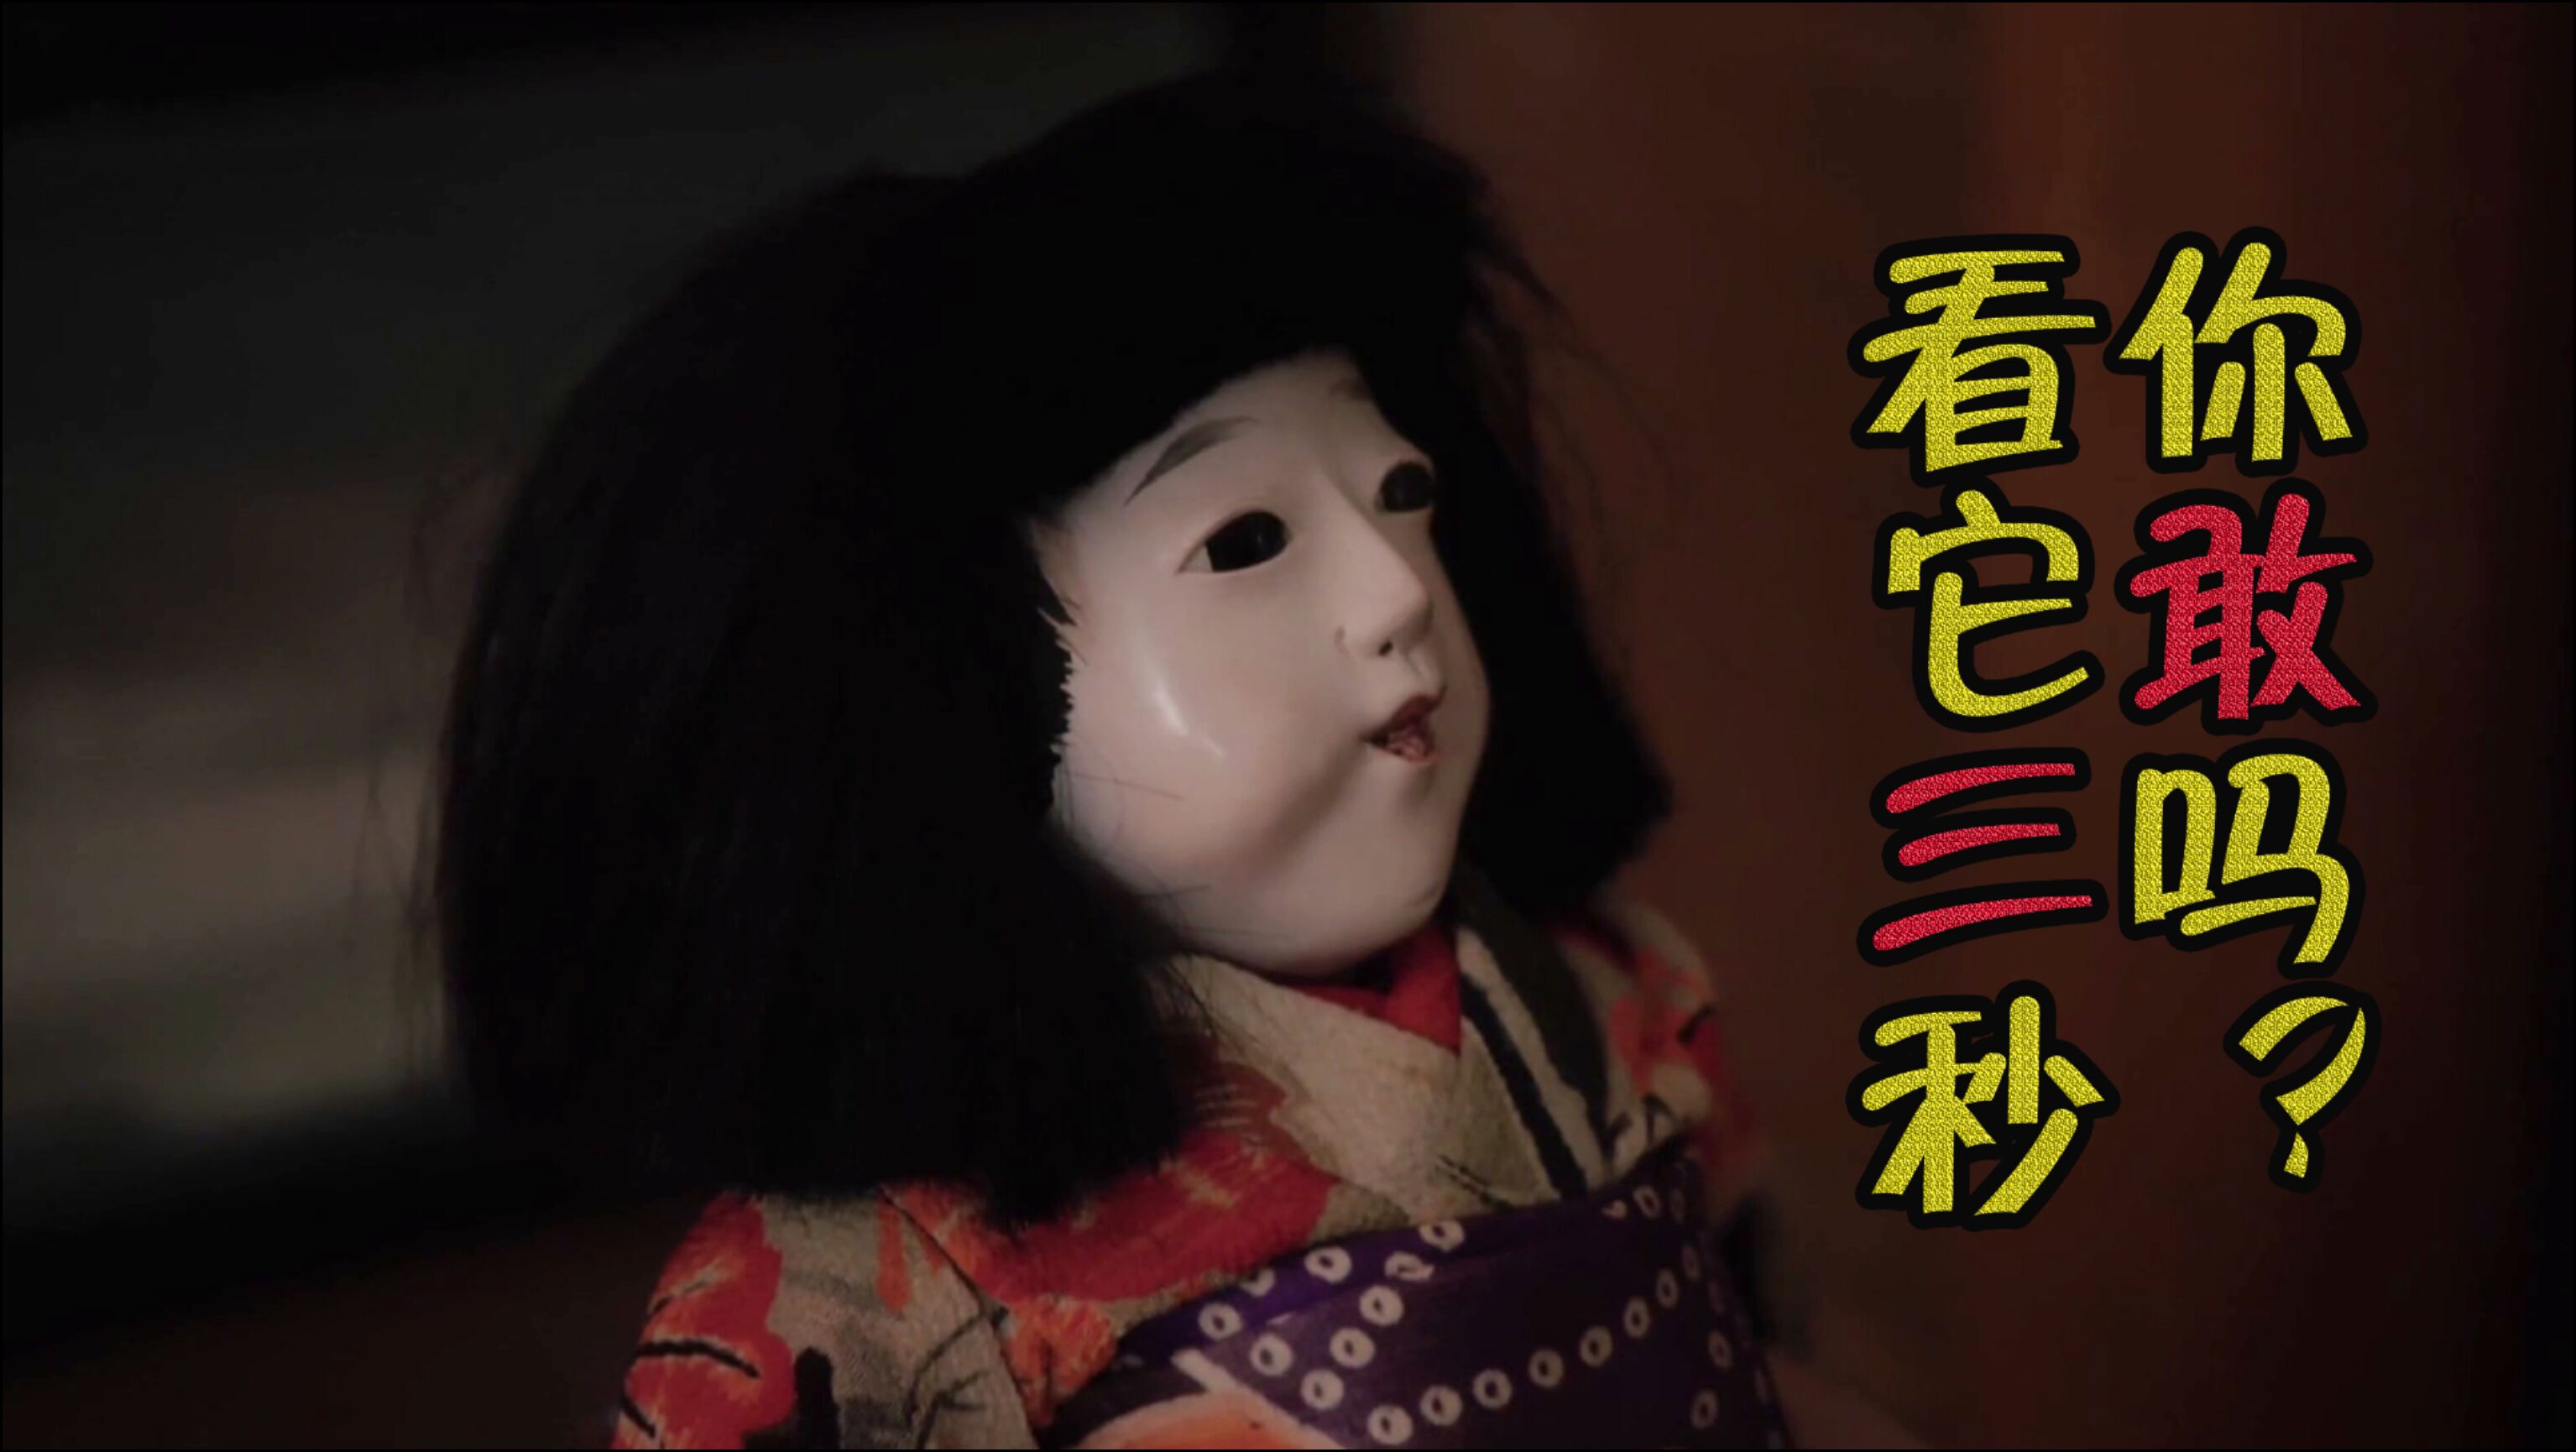 日本恐怖故事这个布娃娃你敢看它3秒以上吗不妨试试看